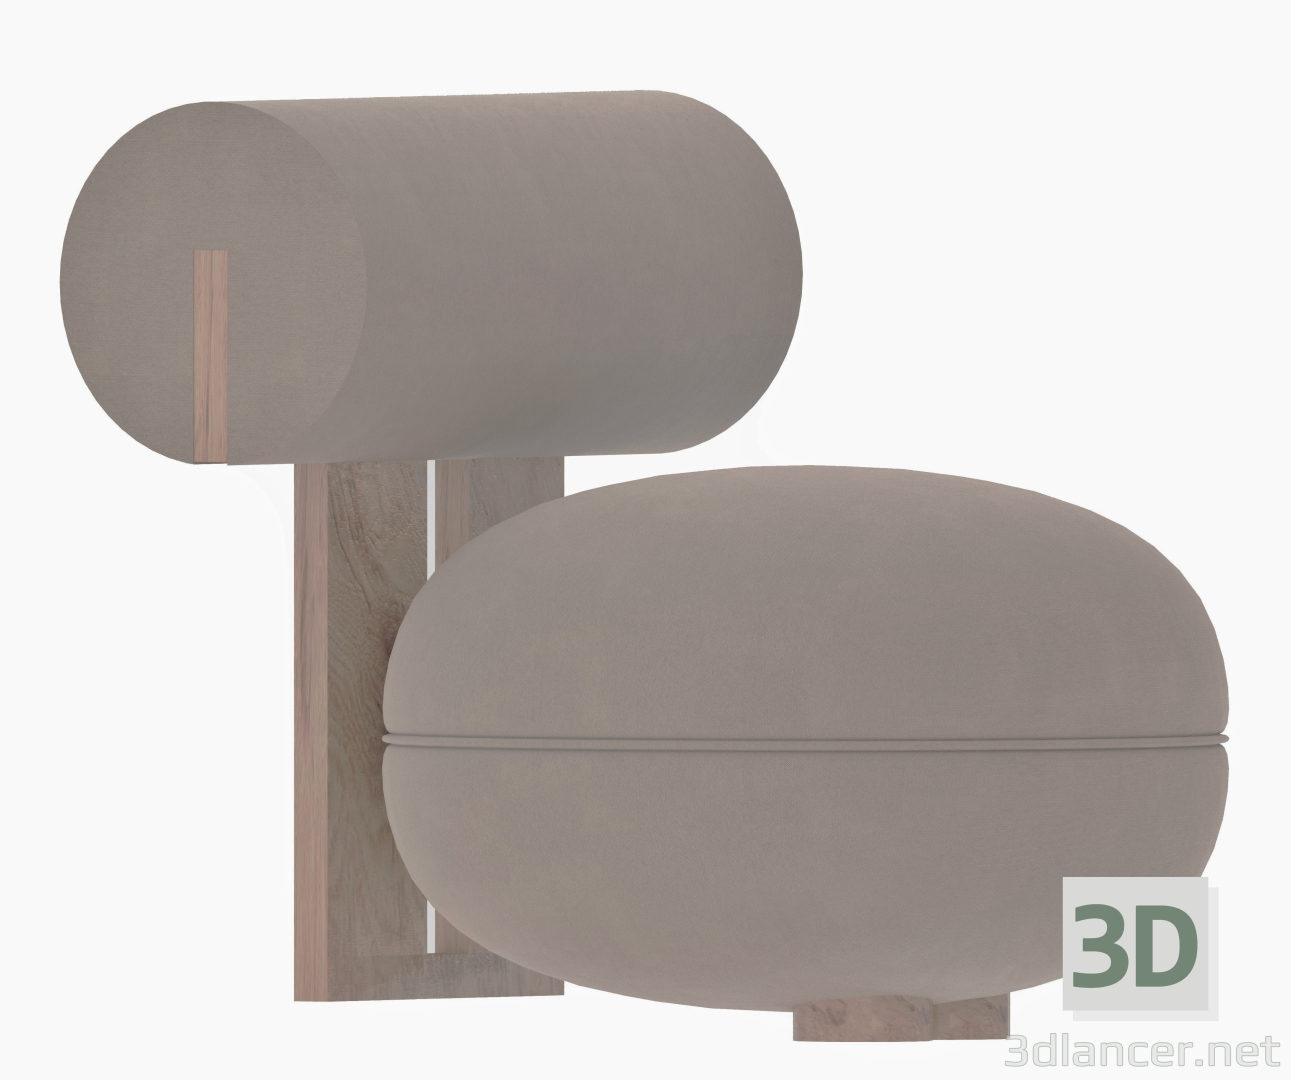 Sessel NORR11 HIPPO 3D-Modell kaufen - Rendern